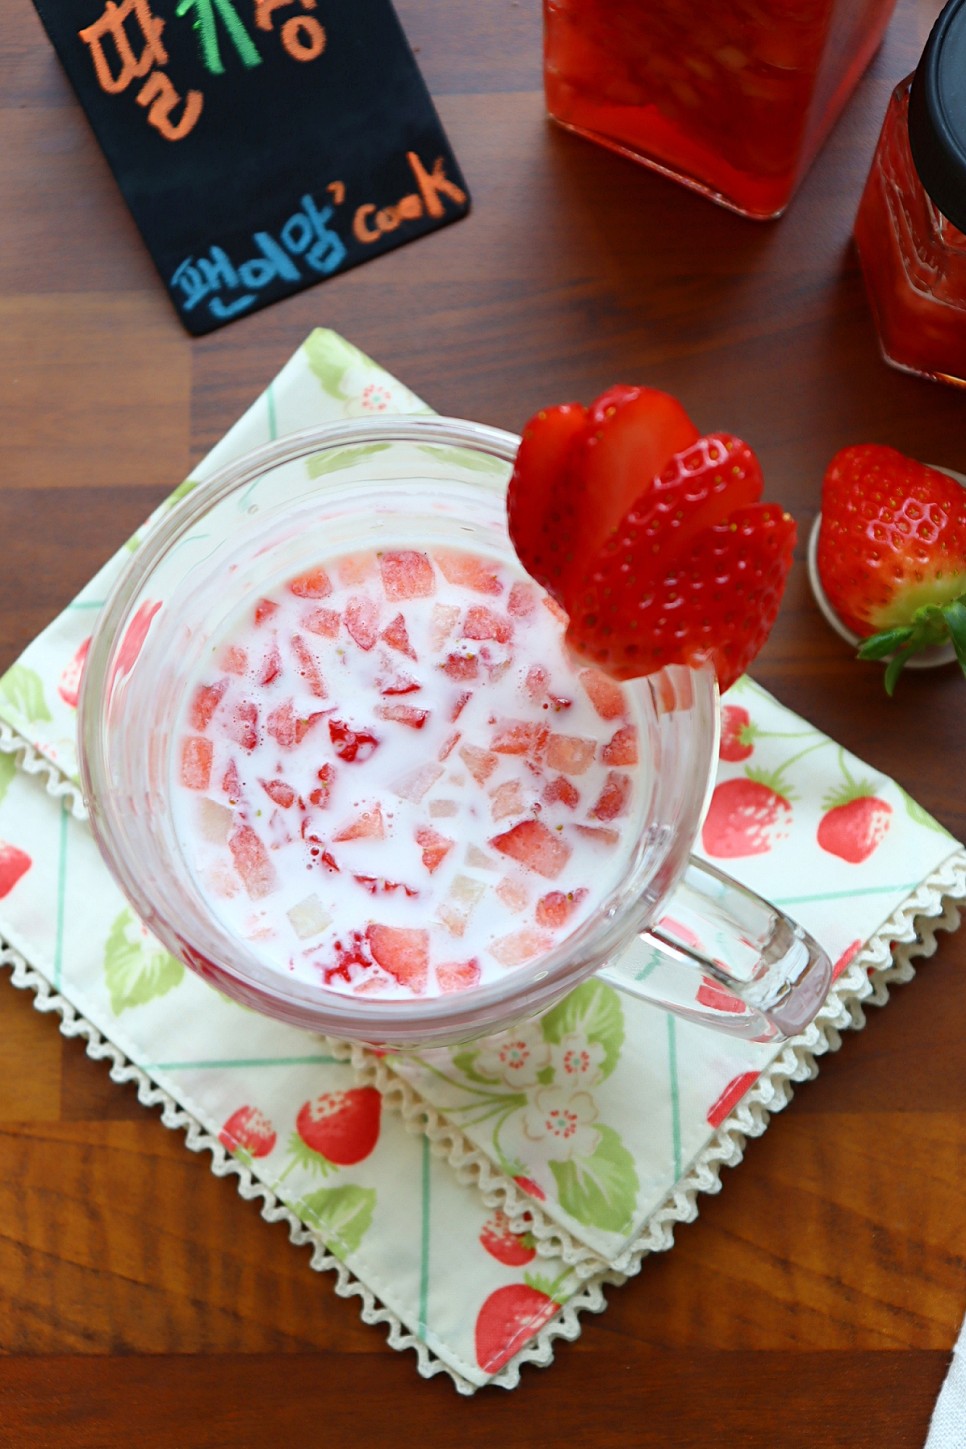 딸기청 만들기 리얼 딸기우유 딸기라떼 만들기 수제청 과일청 생딸기우유 레시피